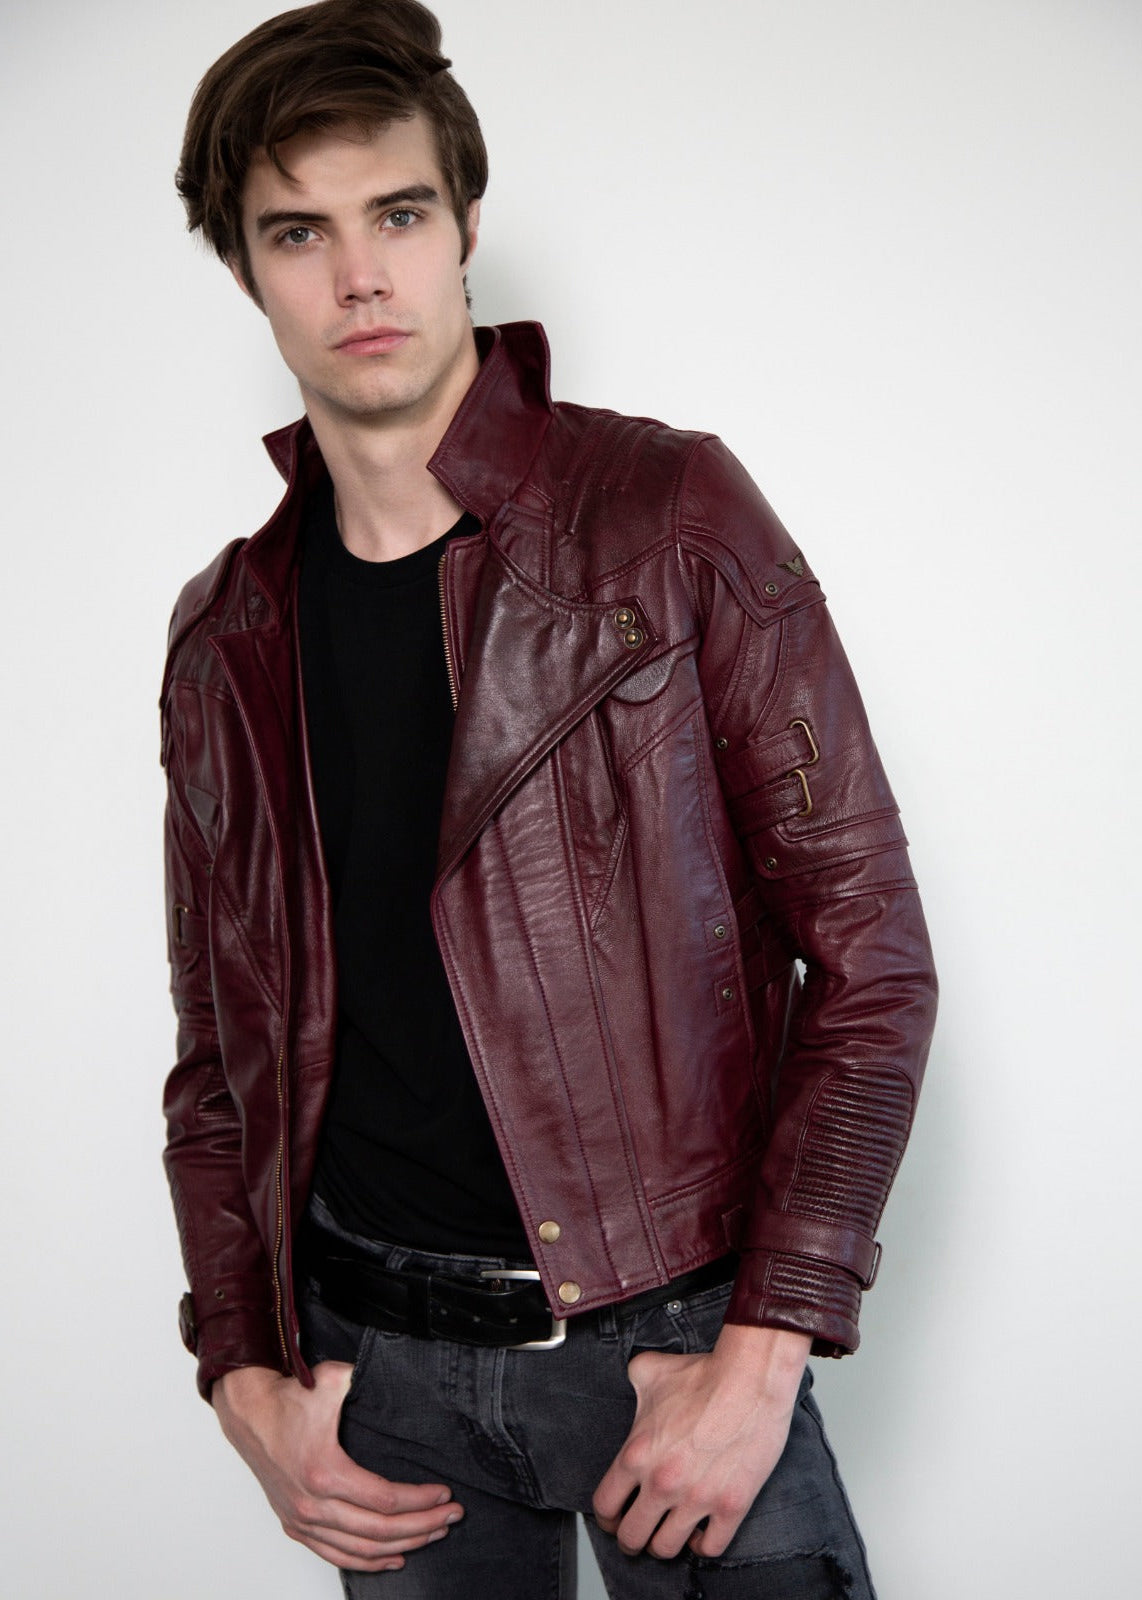 Mens Red Devil Design Vitange Biker Motorcycle Distressed Real Leather  Jacket | eBay